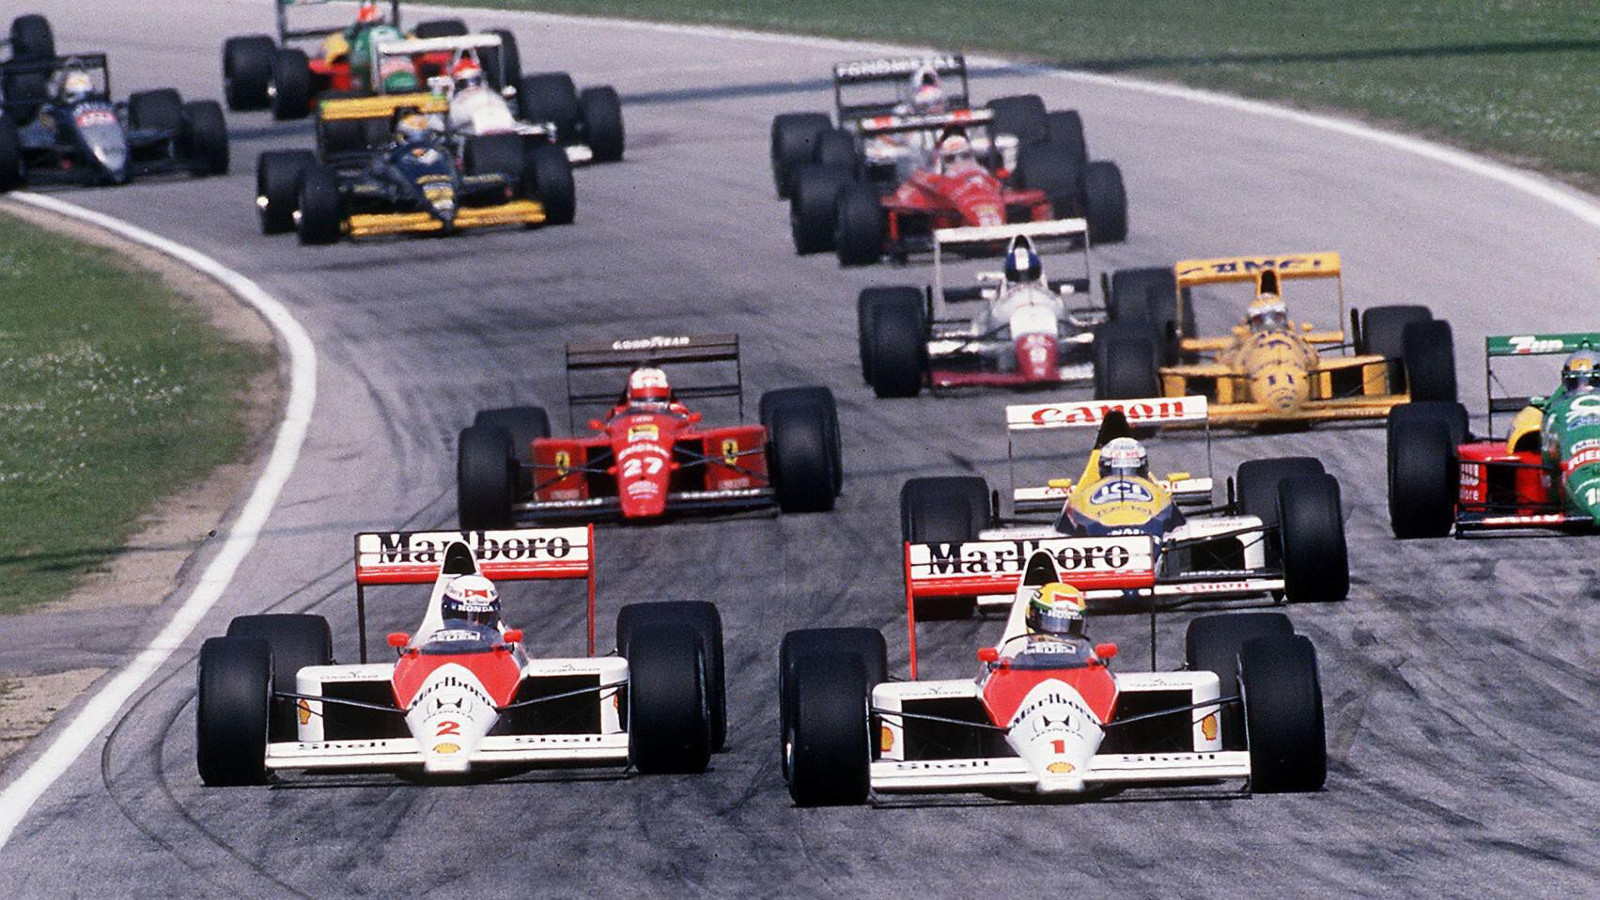 McLaren's Ayrton Senna races Alain Prost at the 1989 San Marino Grand Prix. Imola, April 1989.